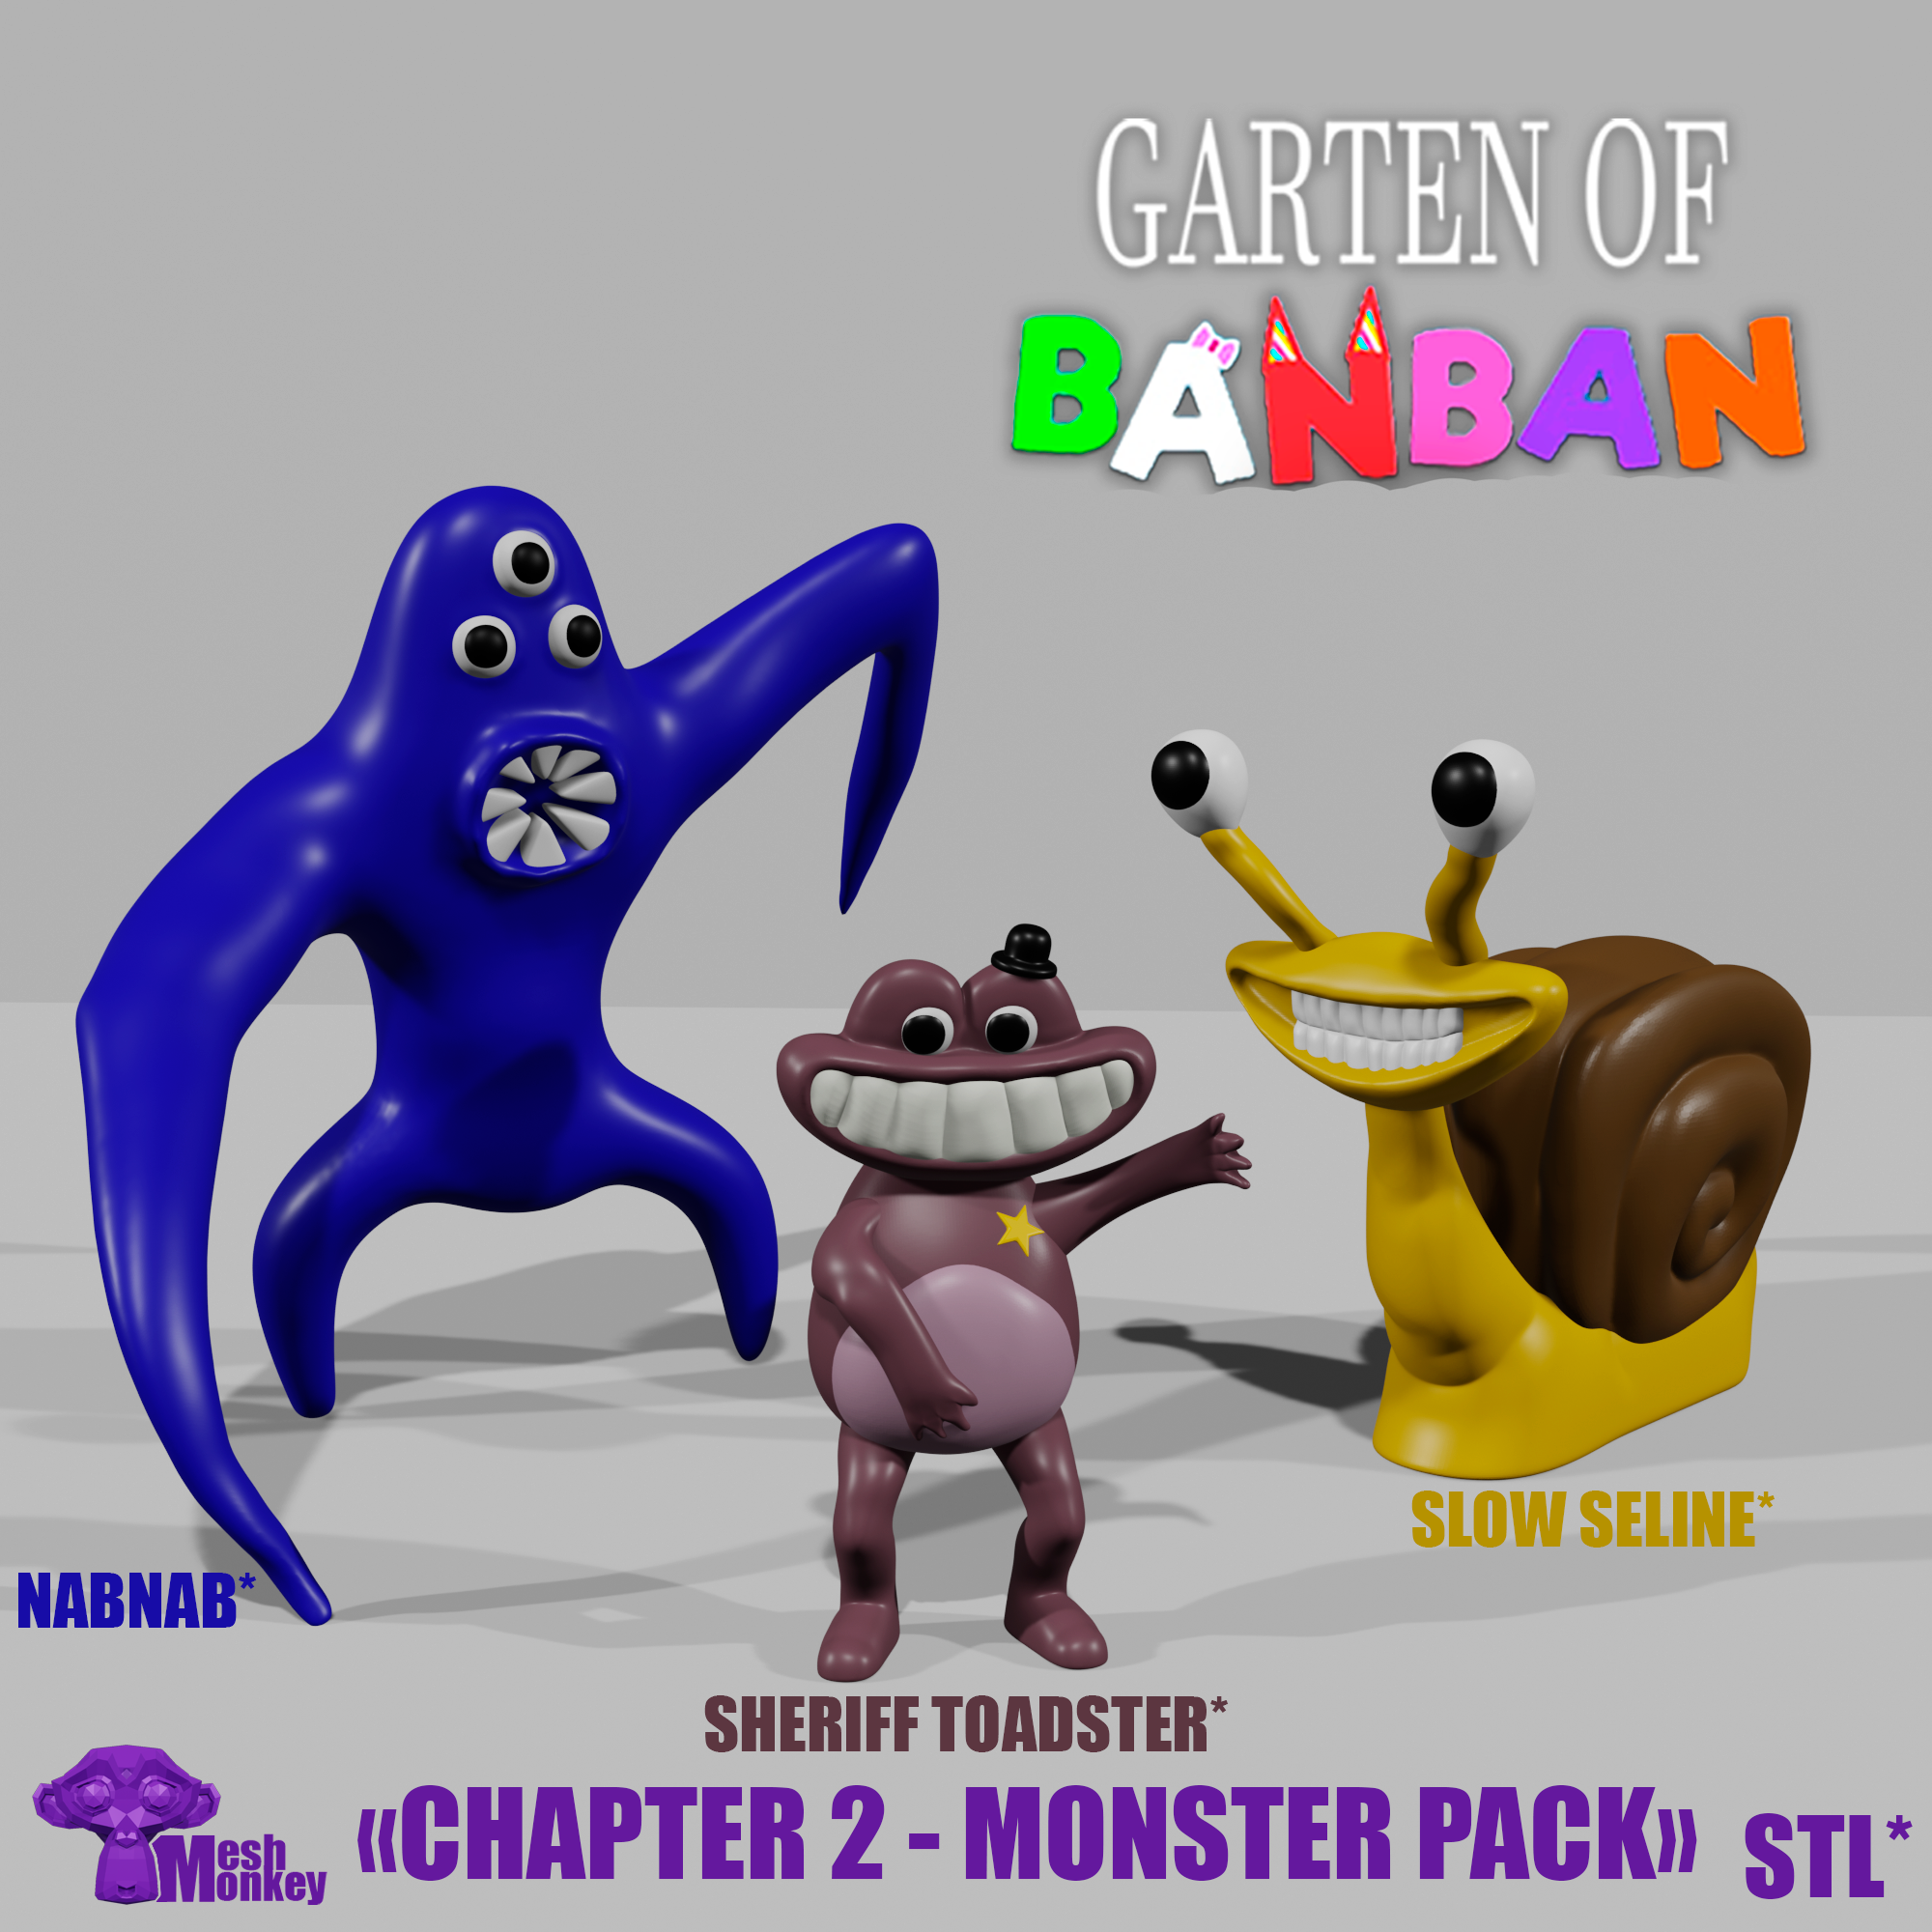 garten of banban 2 | Poster